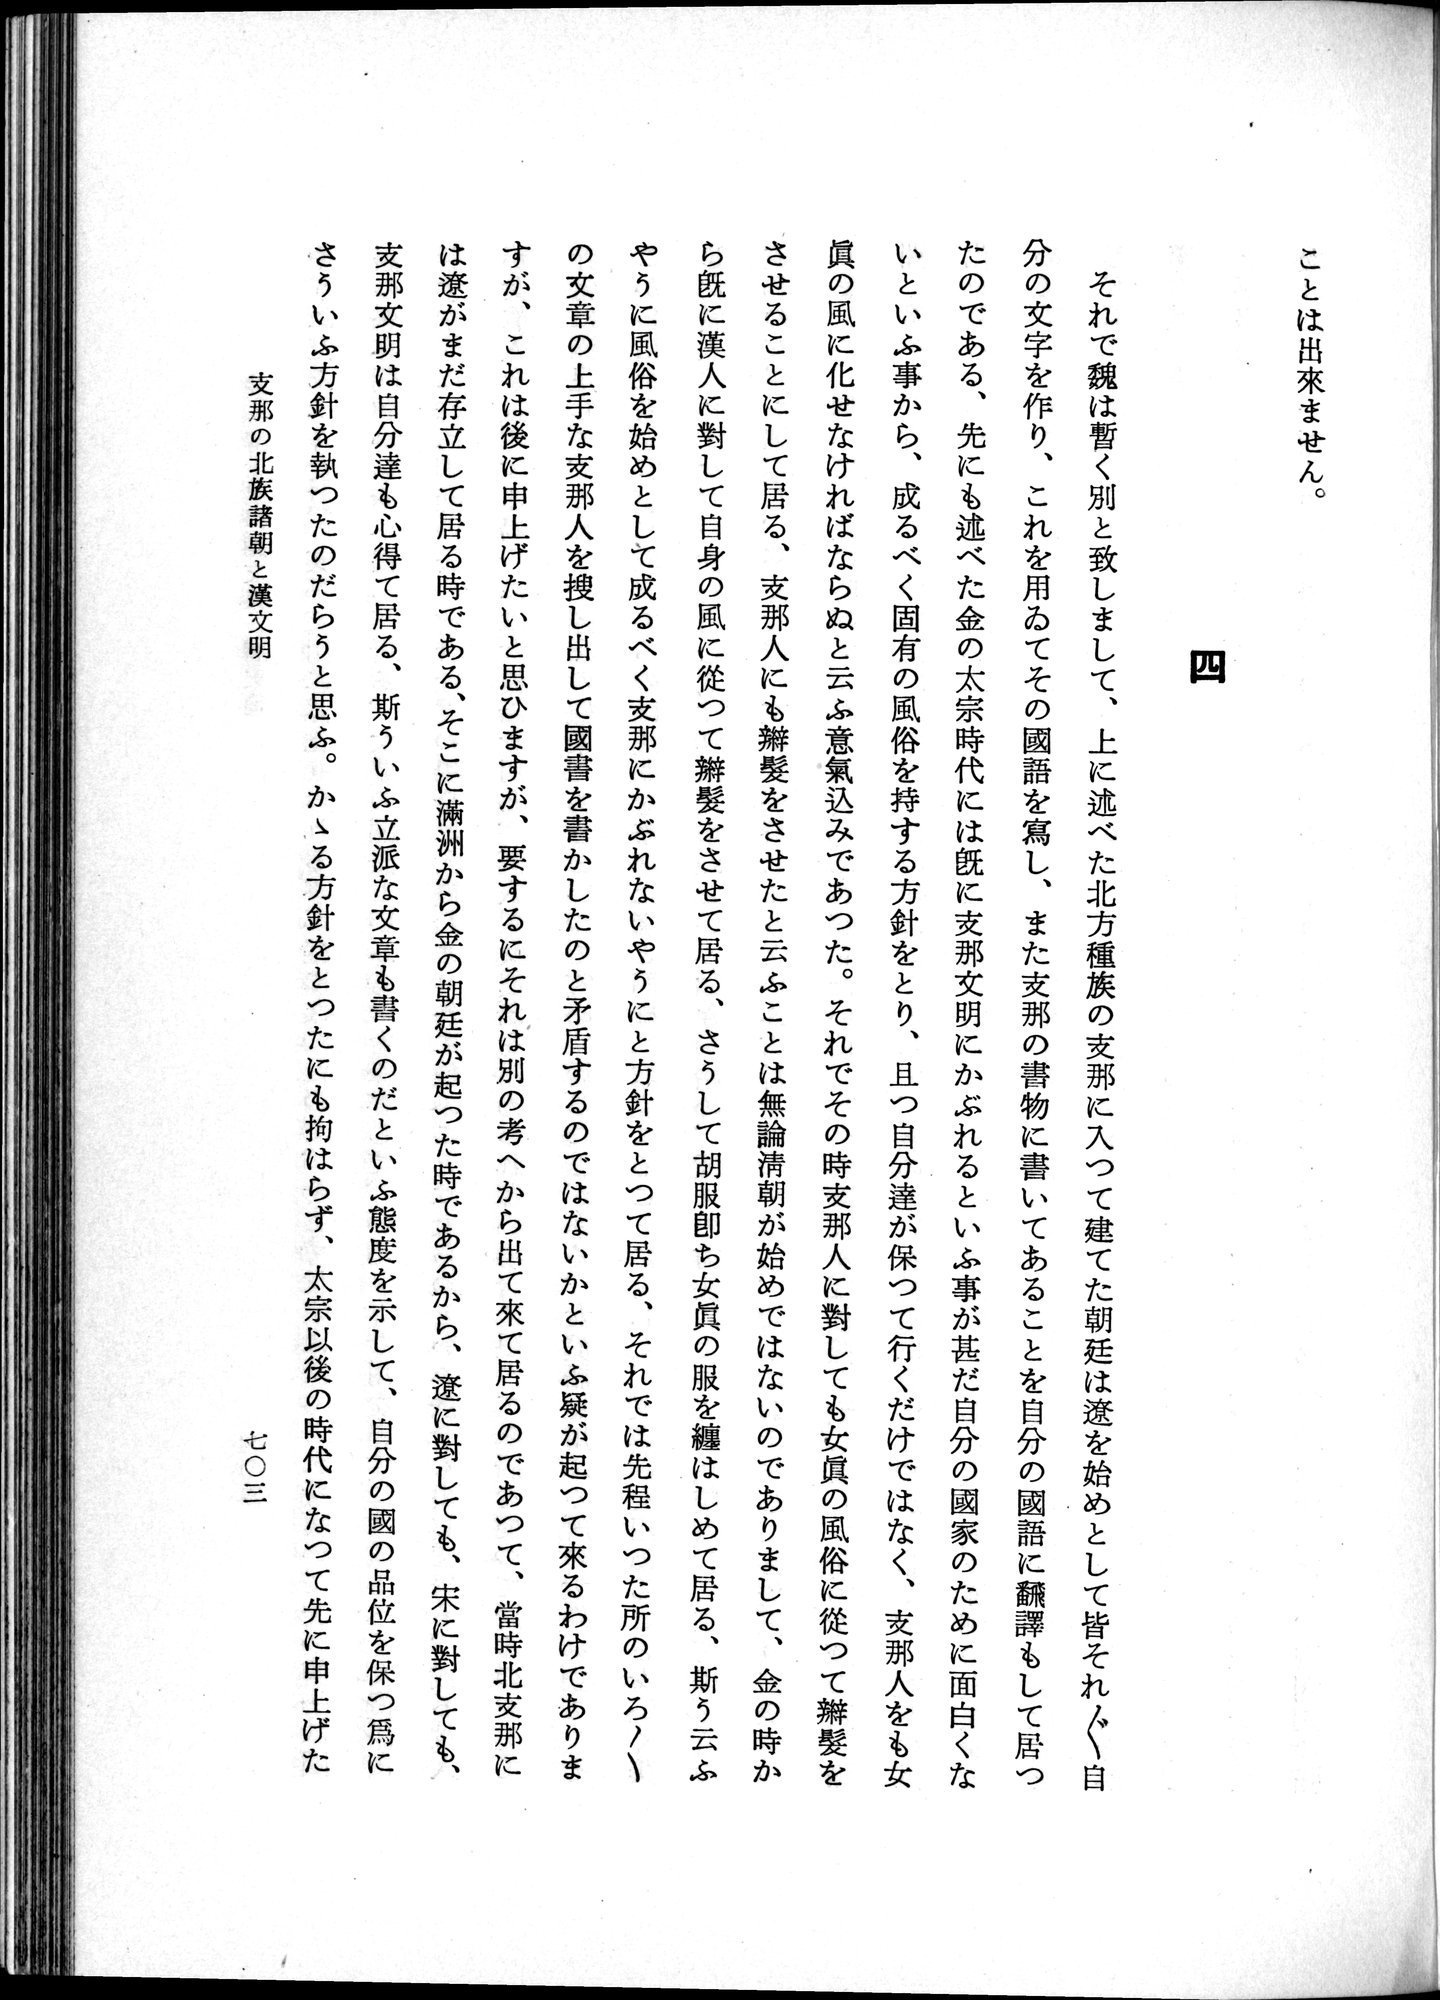 羽田博士史学論文集 : vol.1 / Page 741 (Grayscale High Resolution Image)